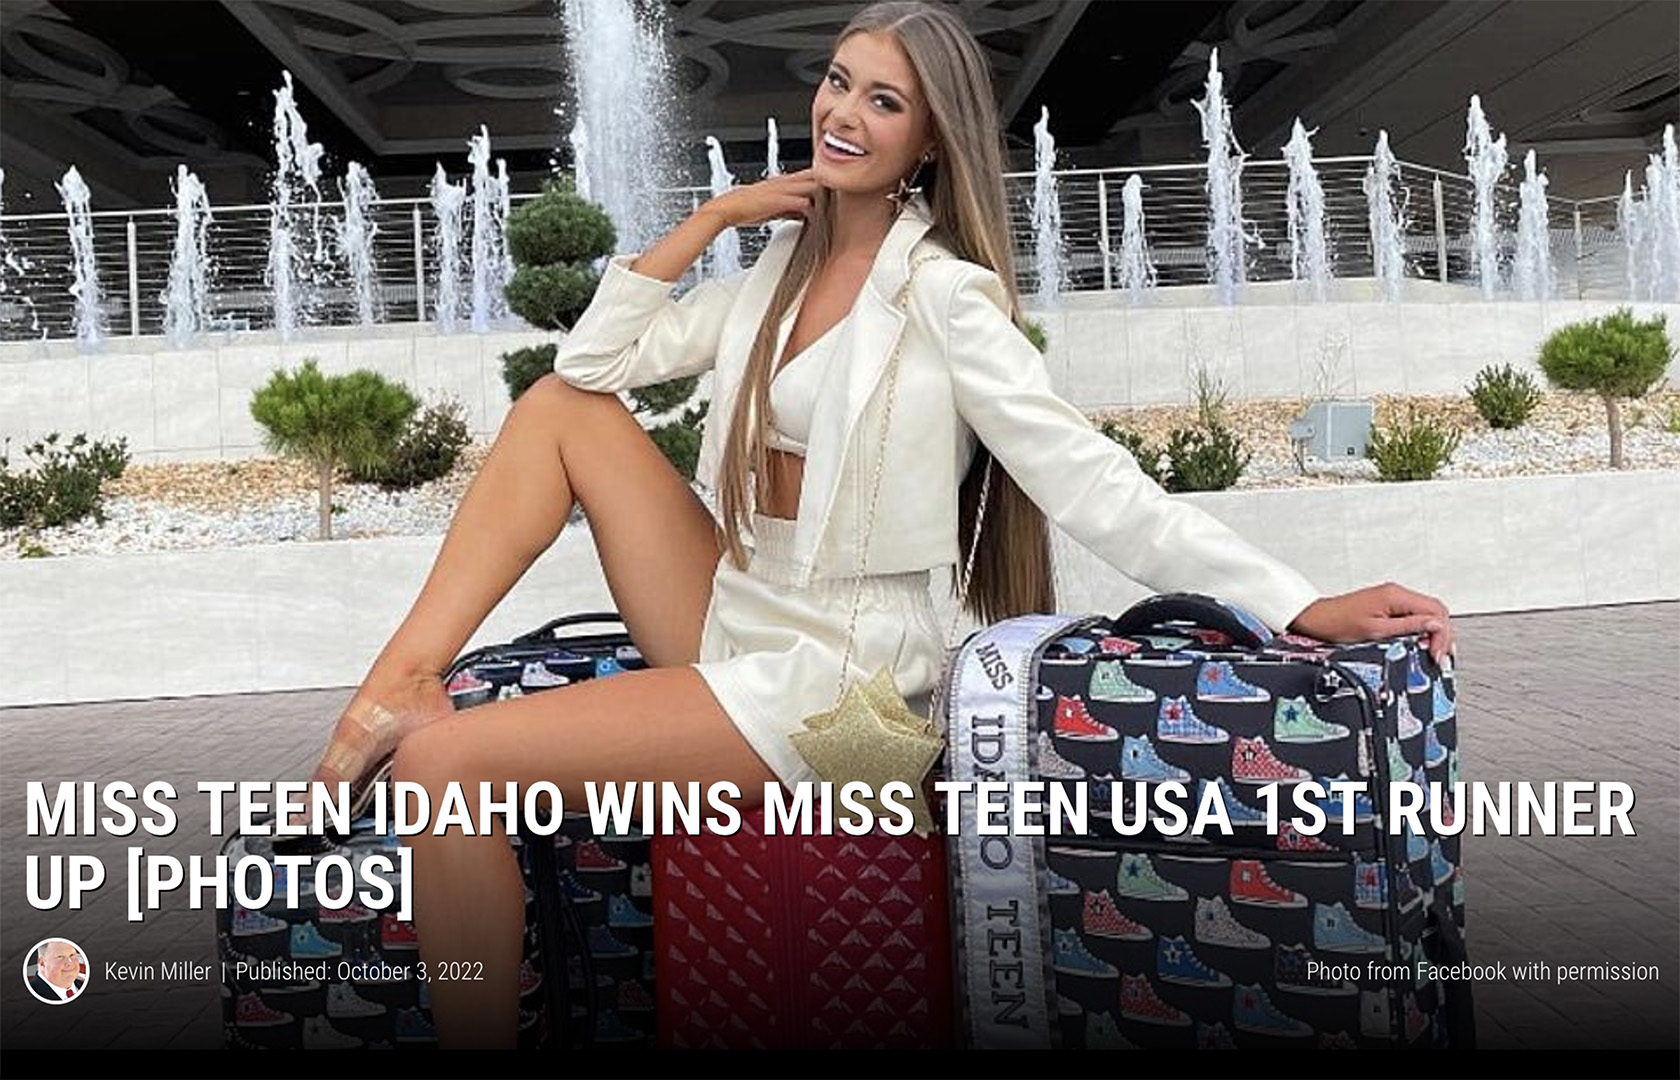 Miss Idaho Teen USA 2021 – Jenna Beckstrom 1st Runner-up!